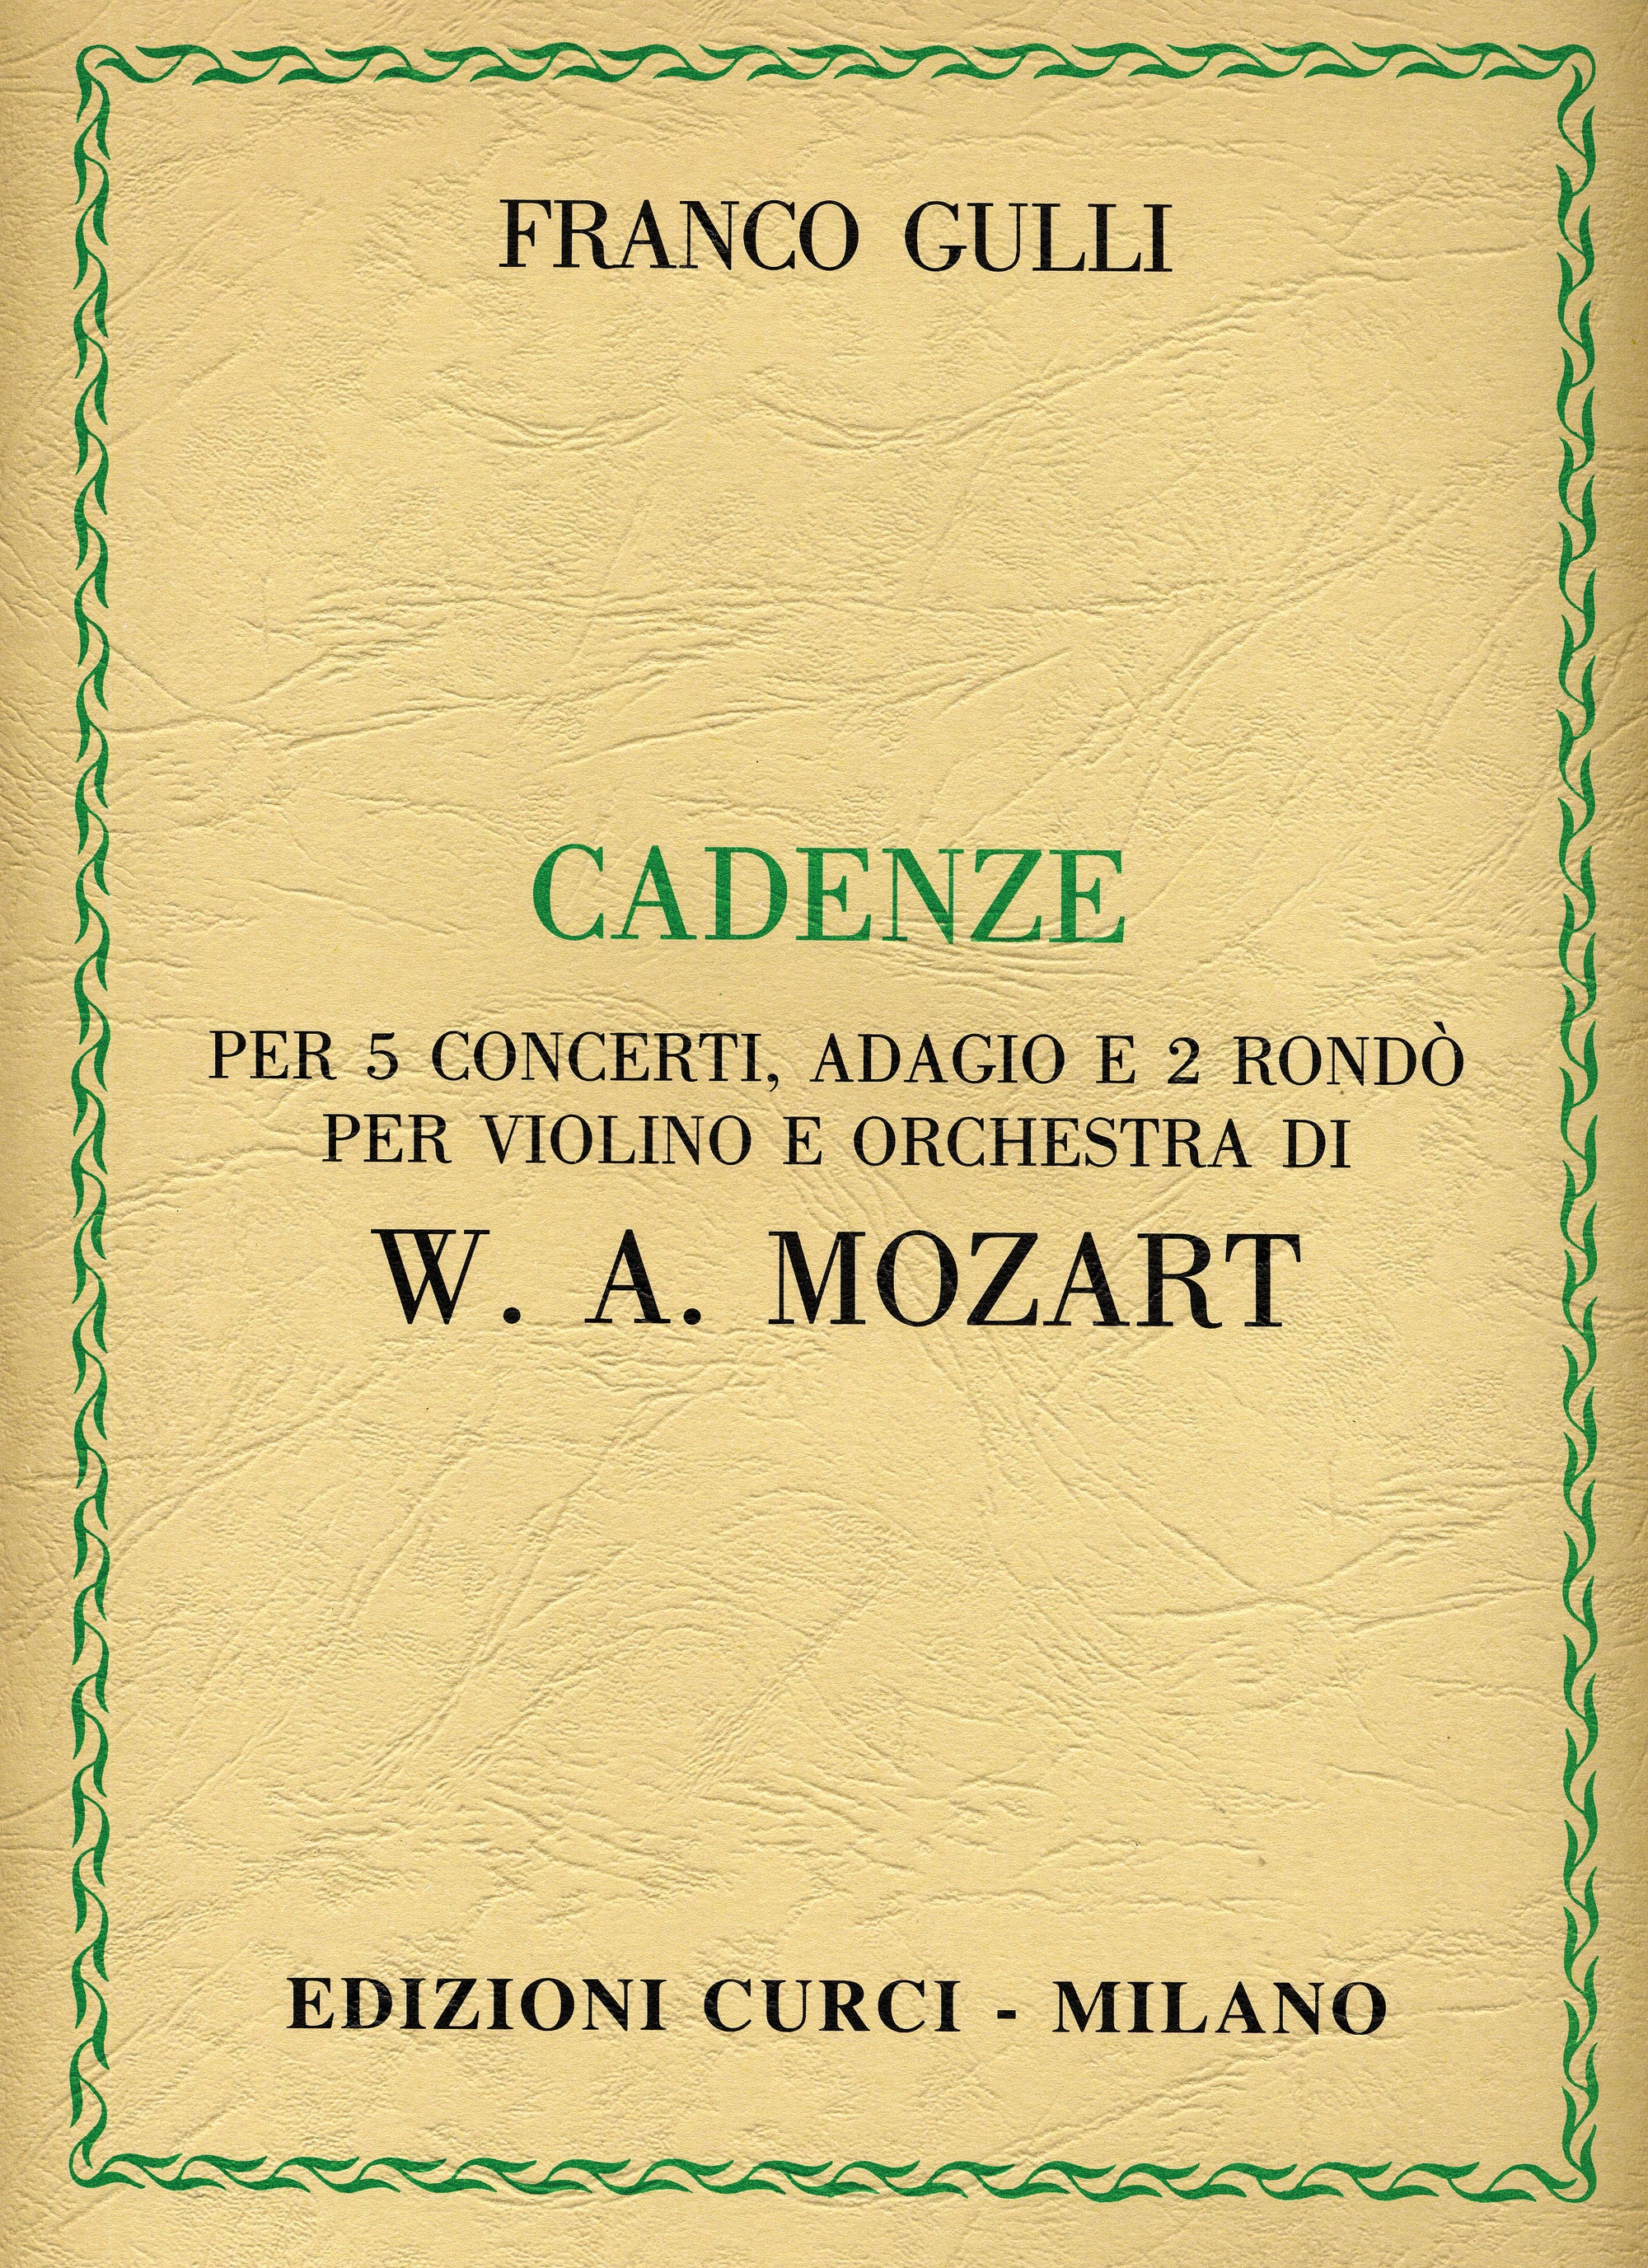 Gulli: Cadenzas to Mozart Violin Concertos, Adagio, and 2 Rondos